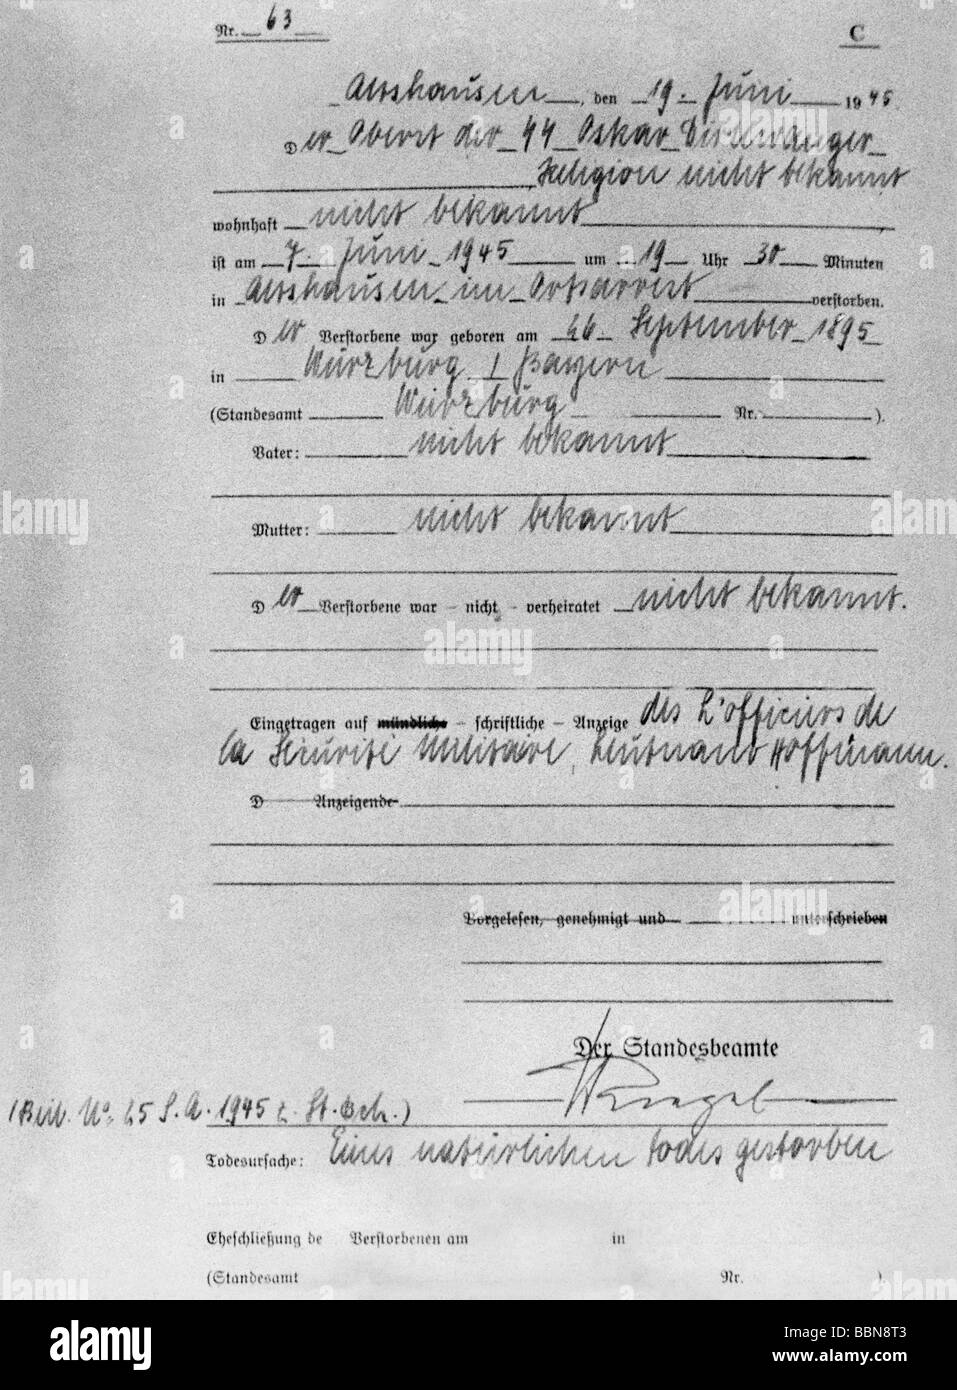 Dirlewanger, Oskar, 26.9.1895 - 6.6.1945, ufficiale militare tedesco (SS), certificato di morte, Althausen, 19.6.1945, Foto Stock